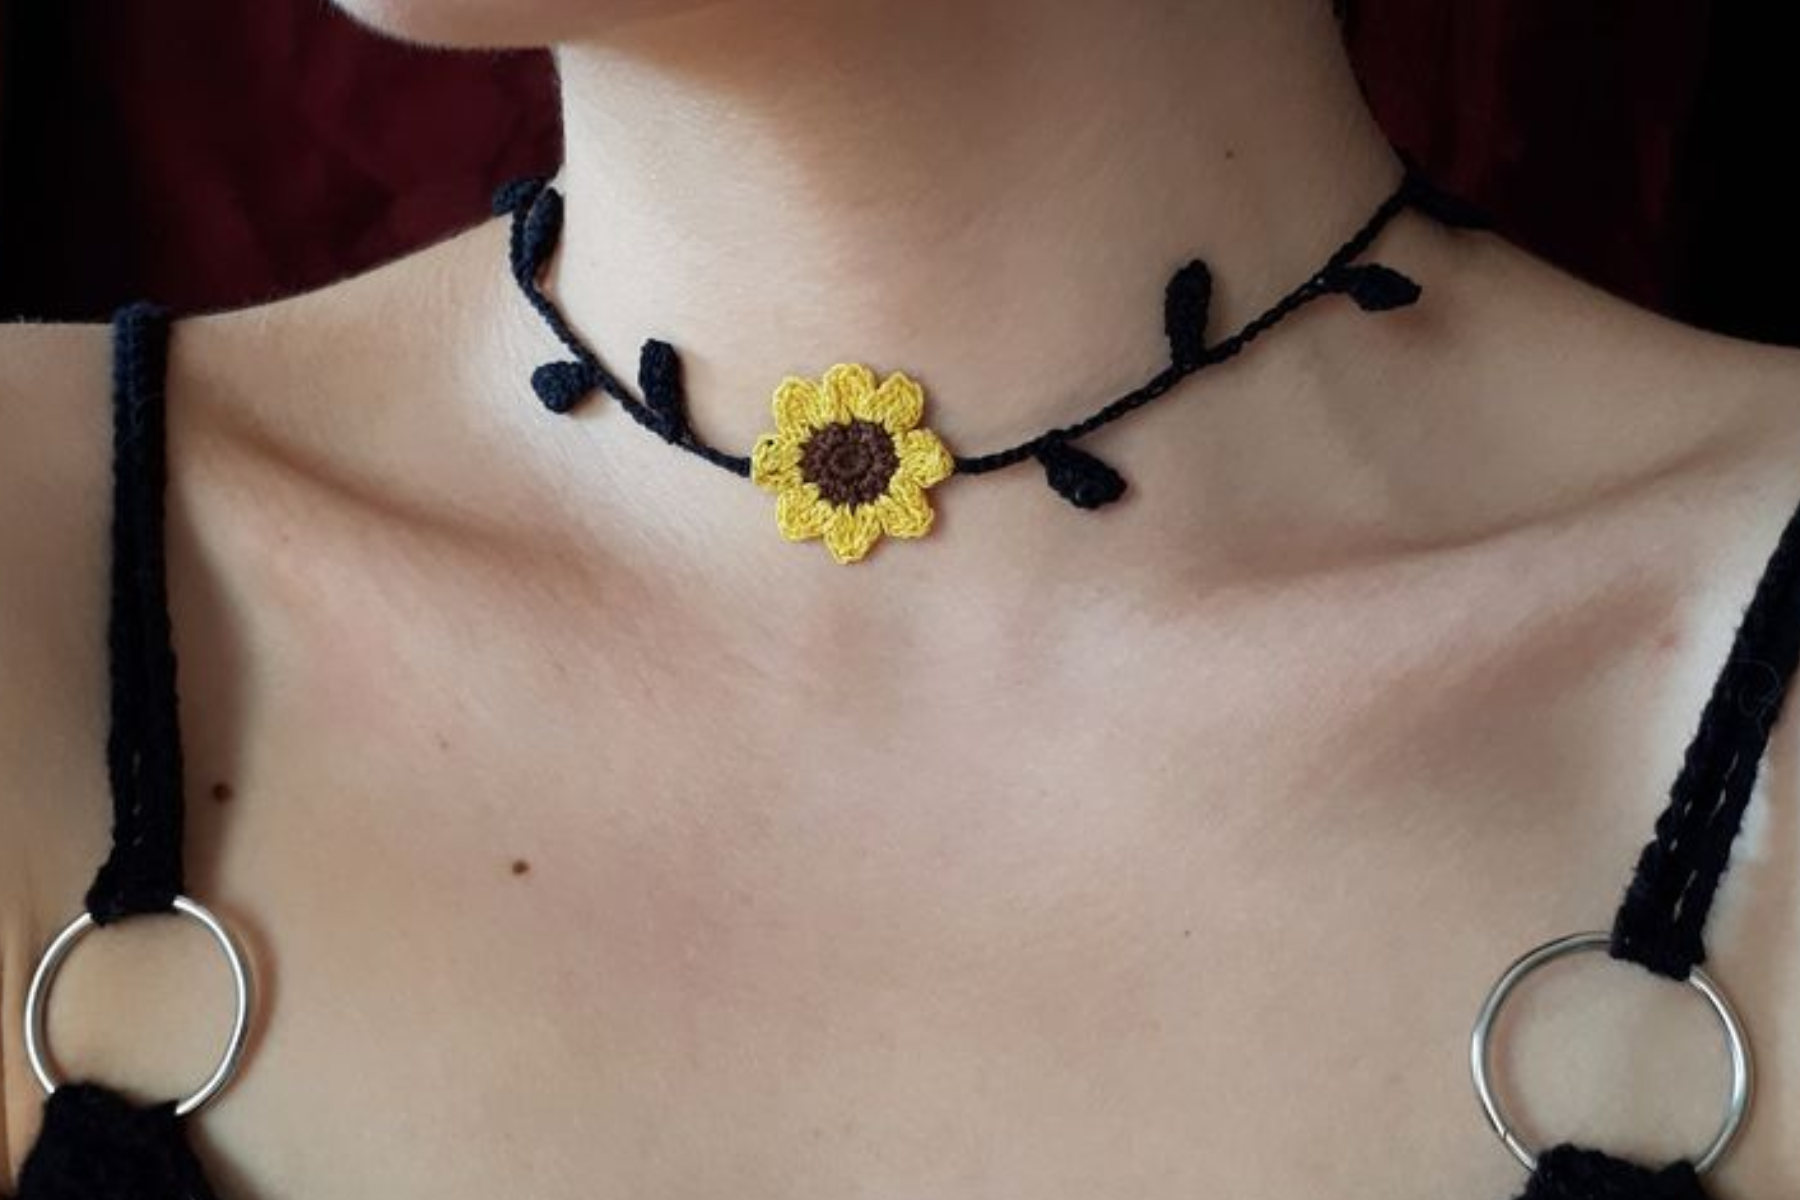 A woman wearing a sunflower choker